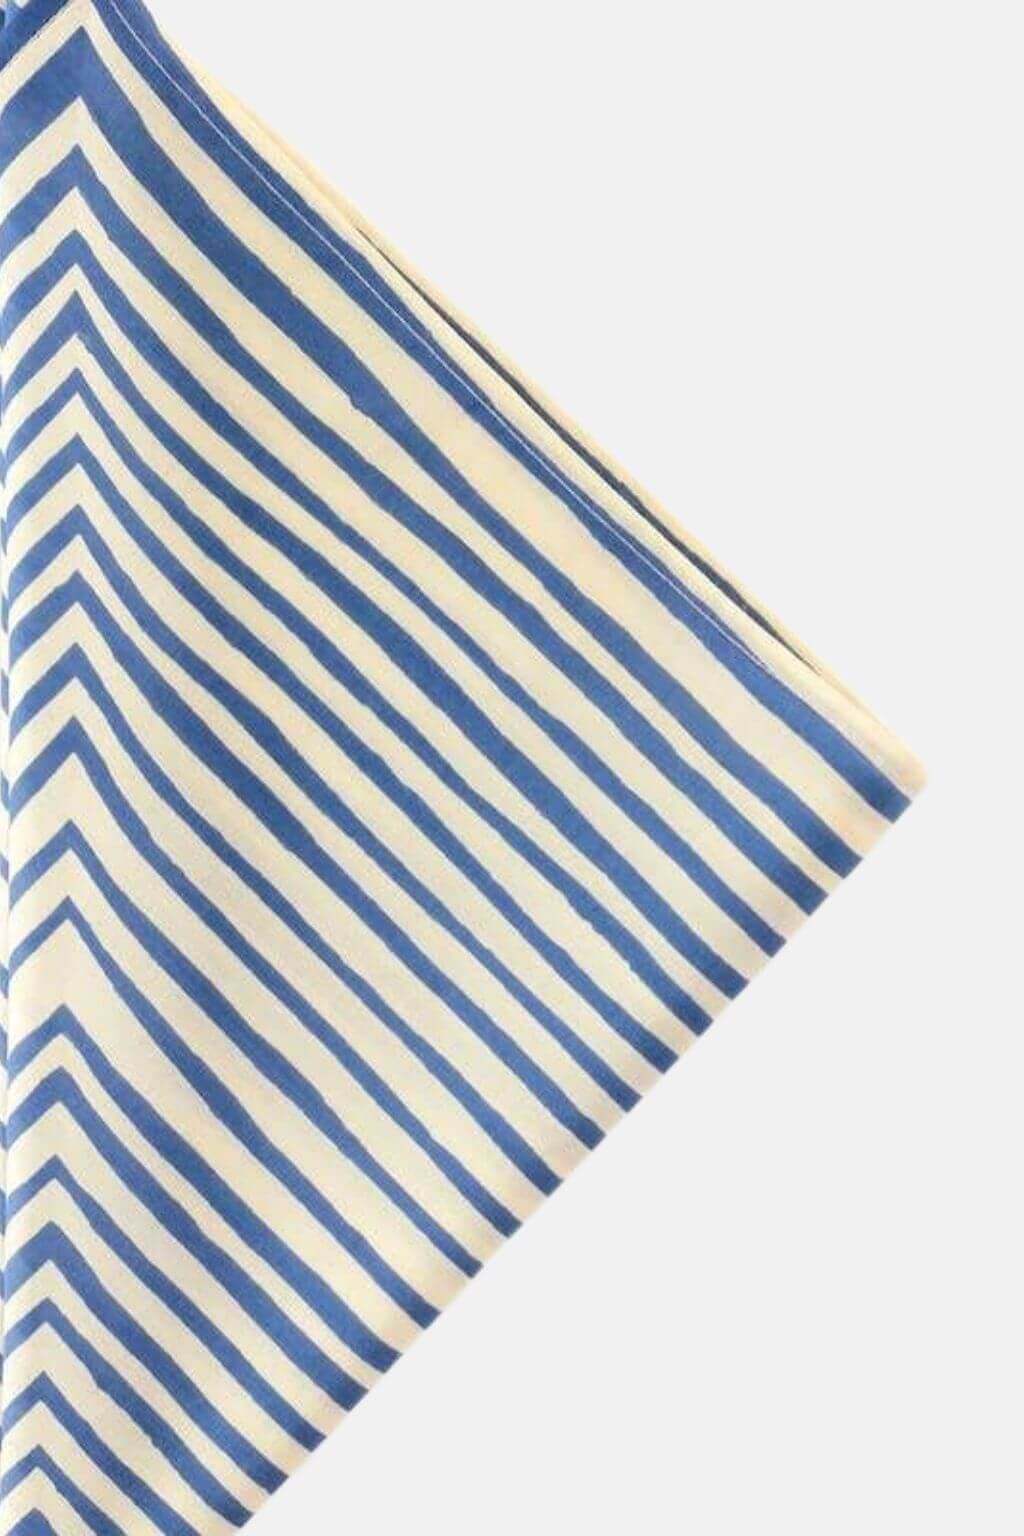 Sammie Bleu Bandana | Cool Blue Mod Stripes